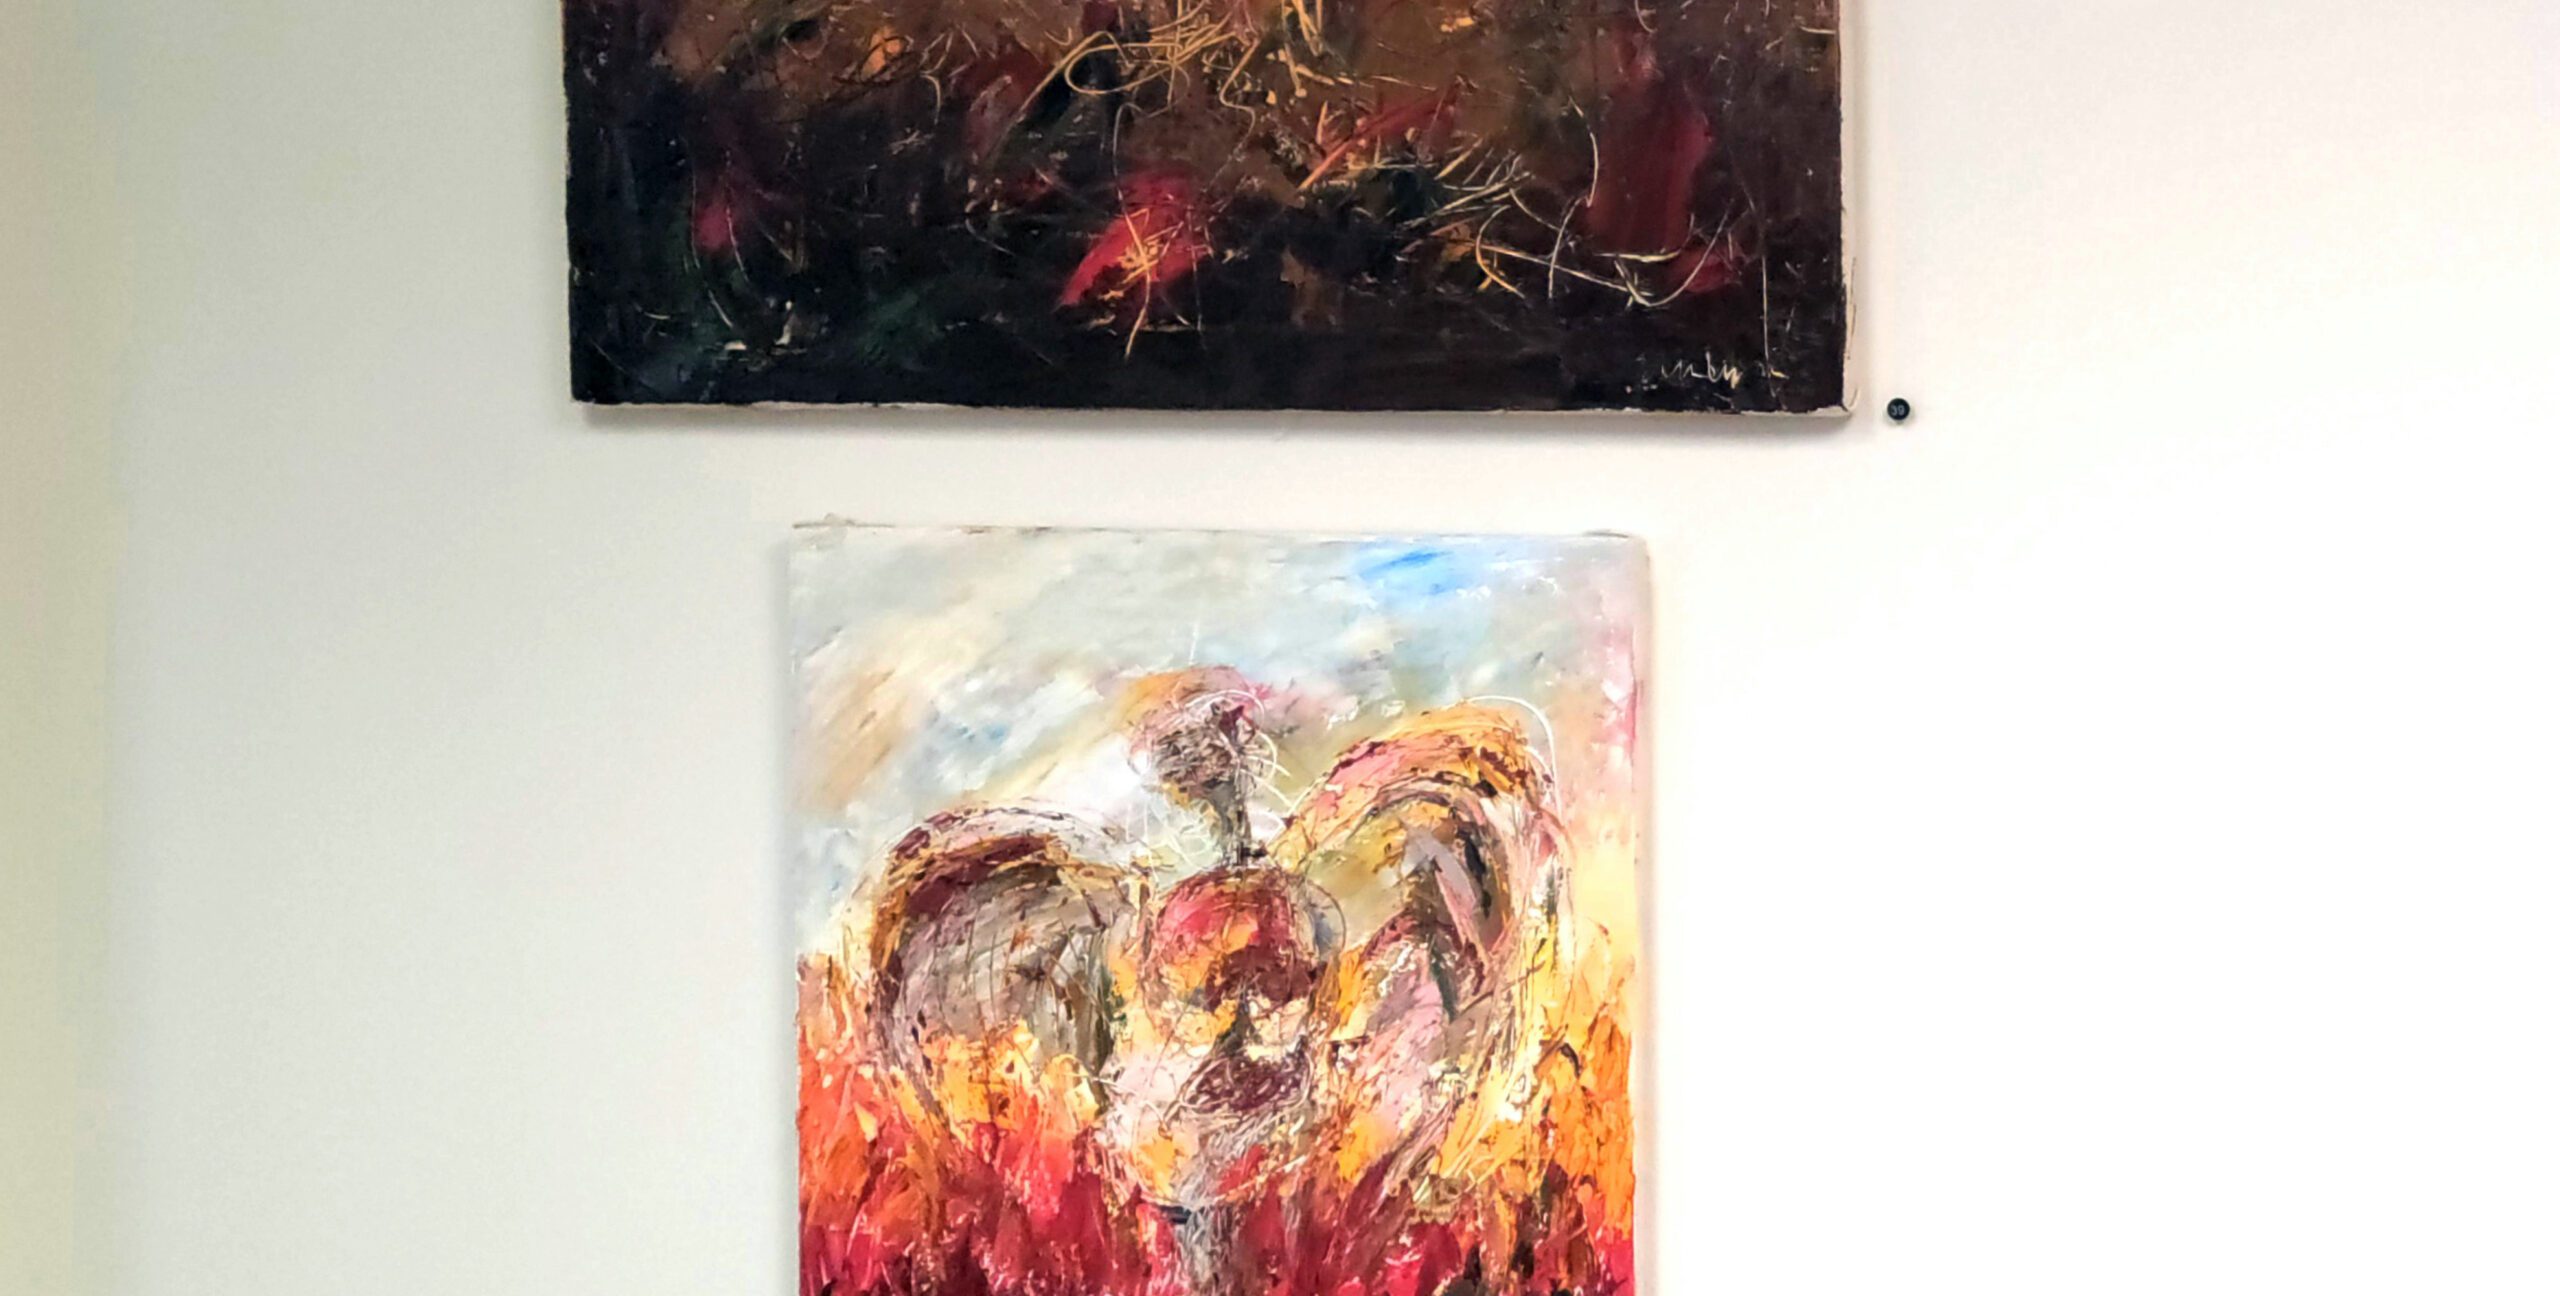 Paintings of Stephen P. Anderson at Modern Visual Arts Gallery in Bethlehem